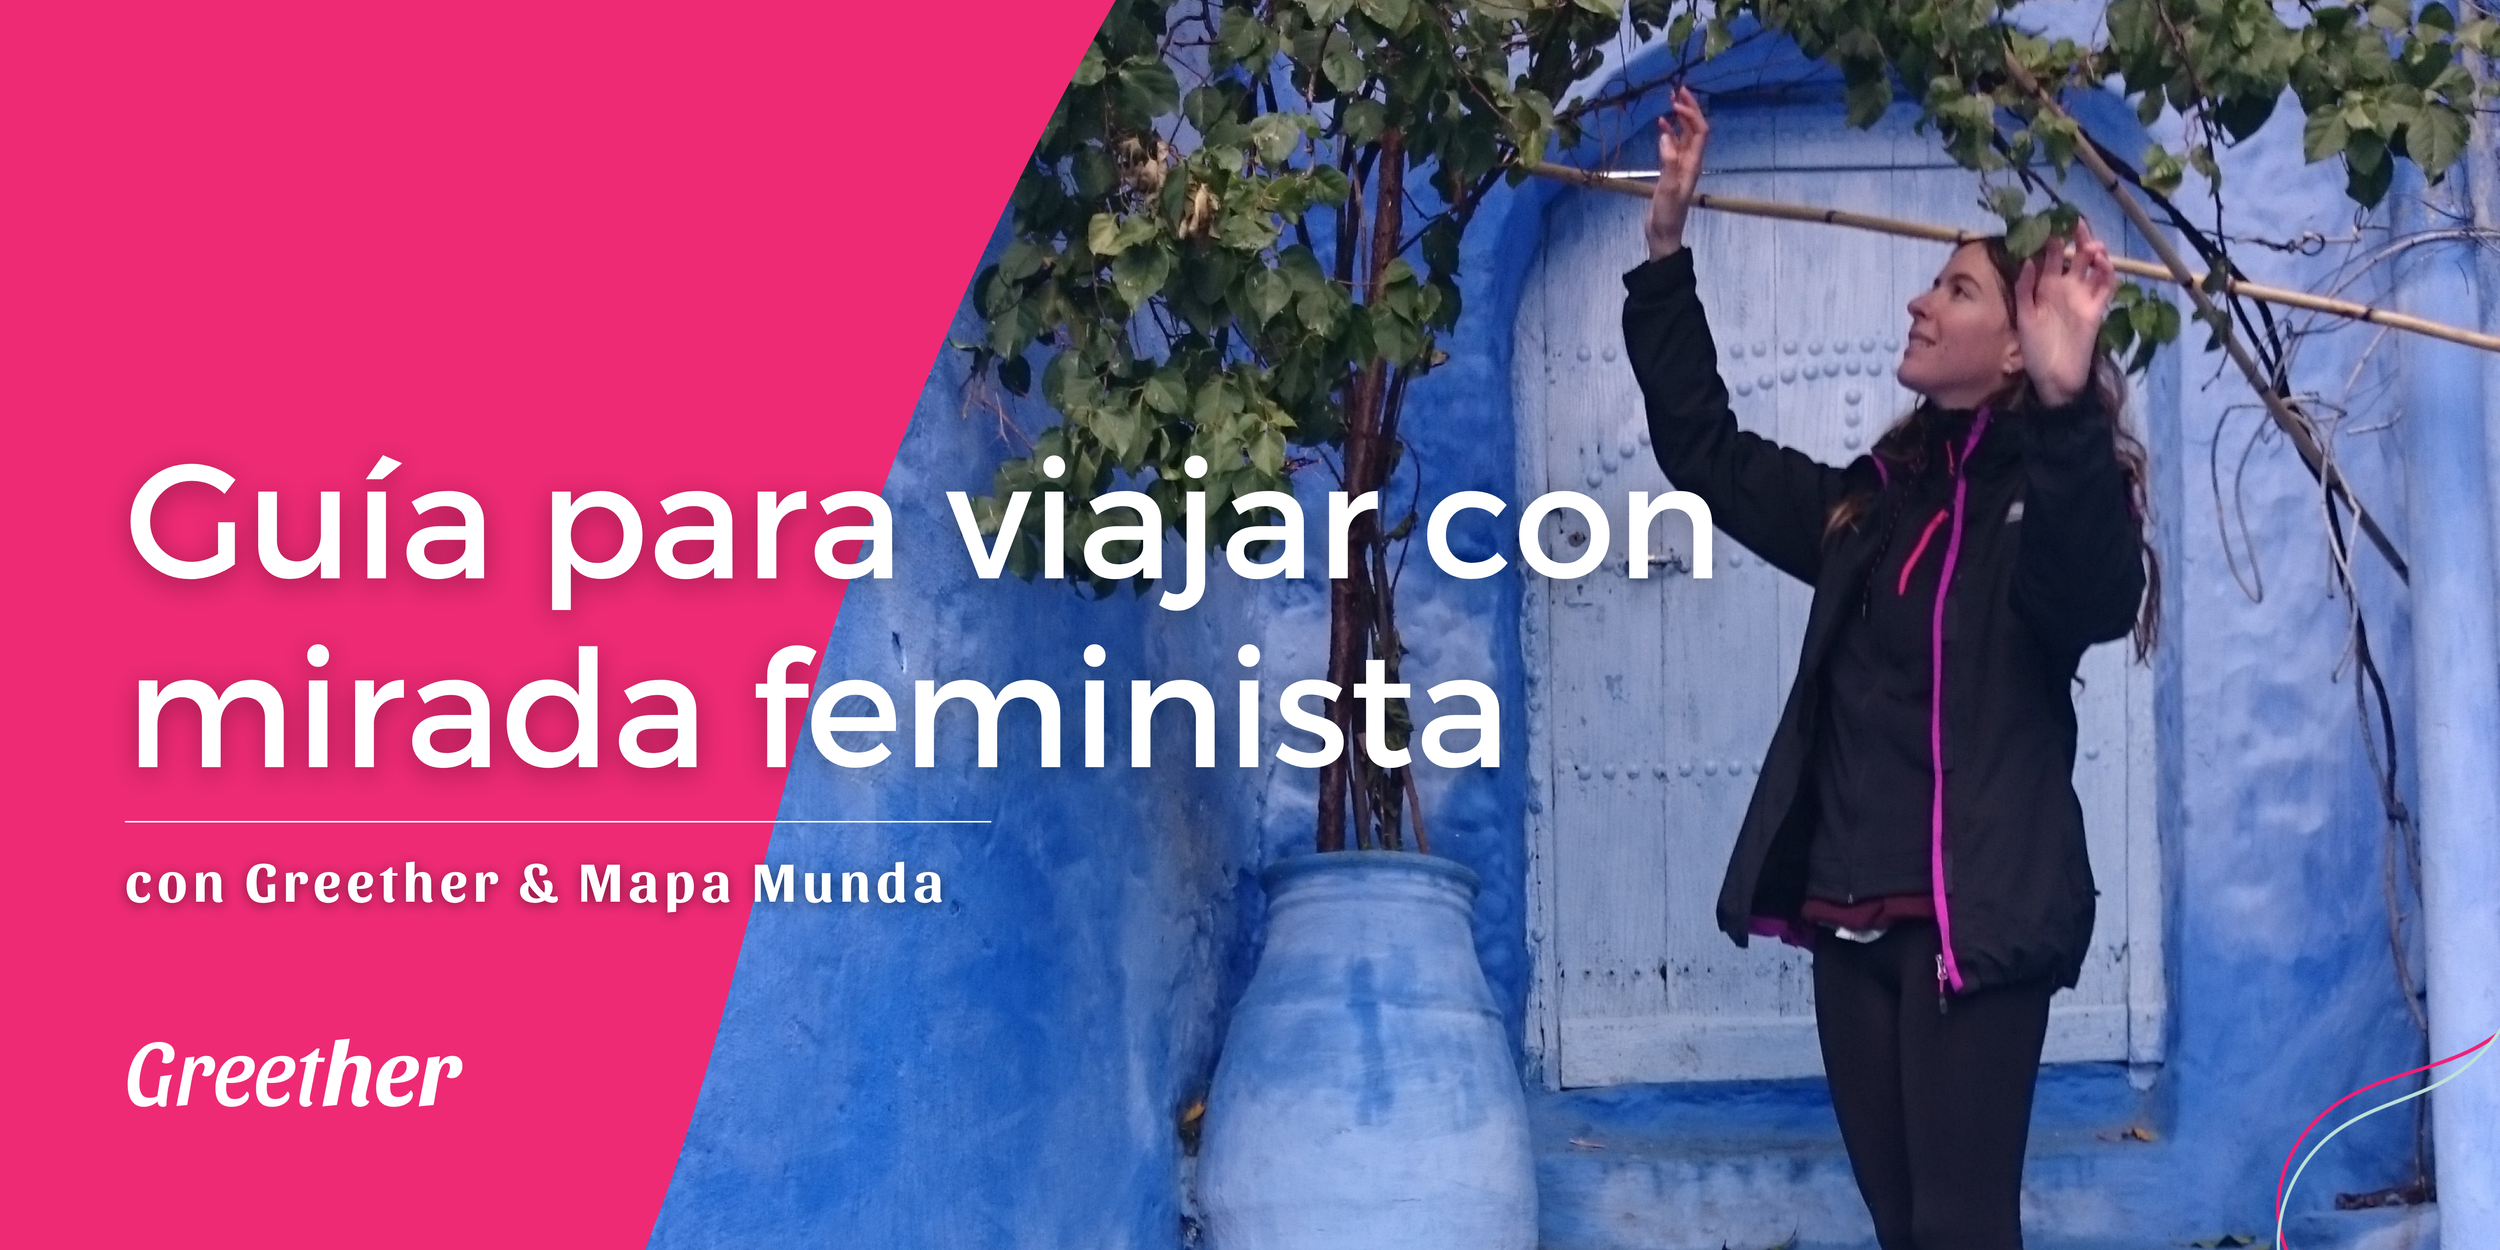 Ariana Bastos en Marruecos, Mapamunda, Guía para viajar con mirada feminista